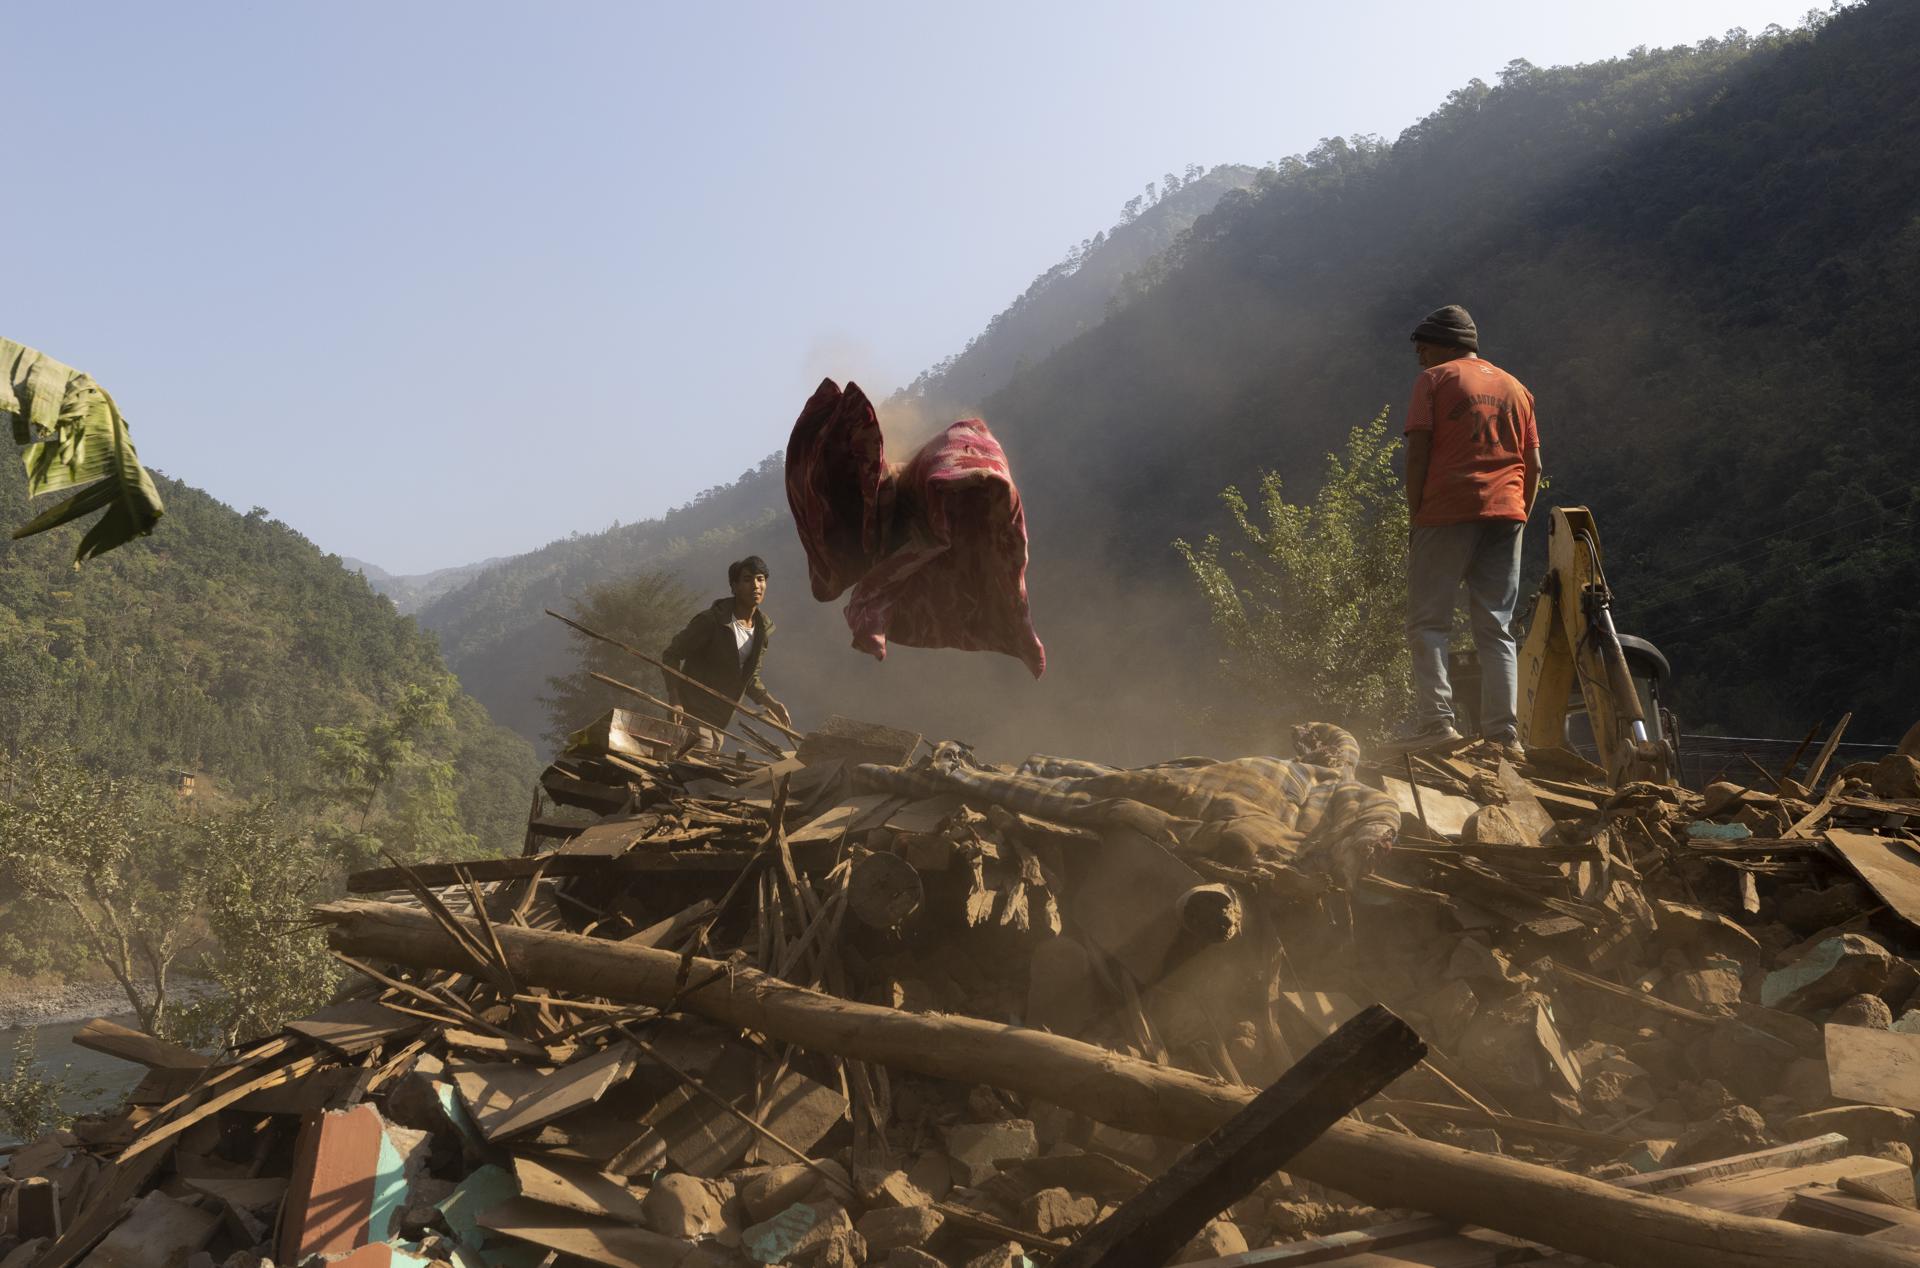 Nuevo terremoto de 5,3 sacude el oeste de Nepal tras el seísmo del viernes con 153 muertos